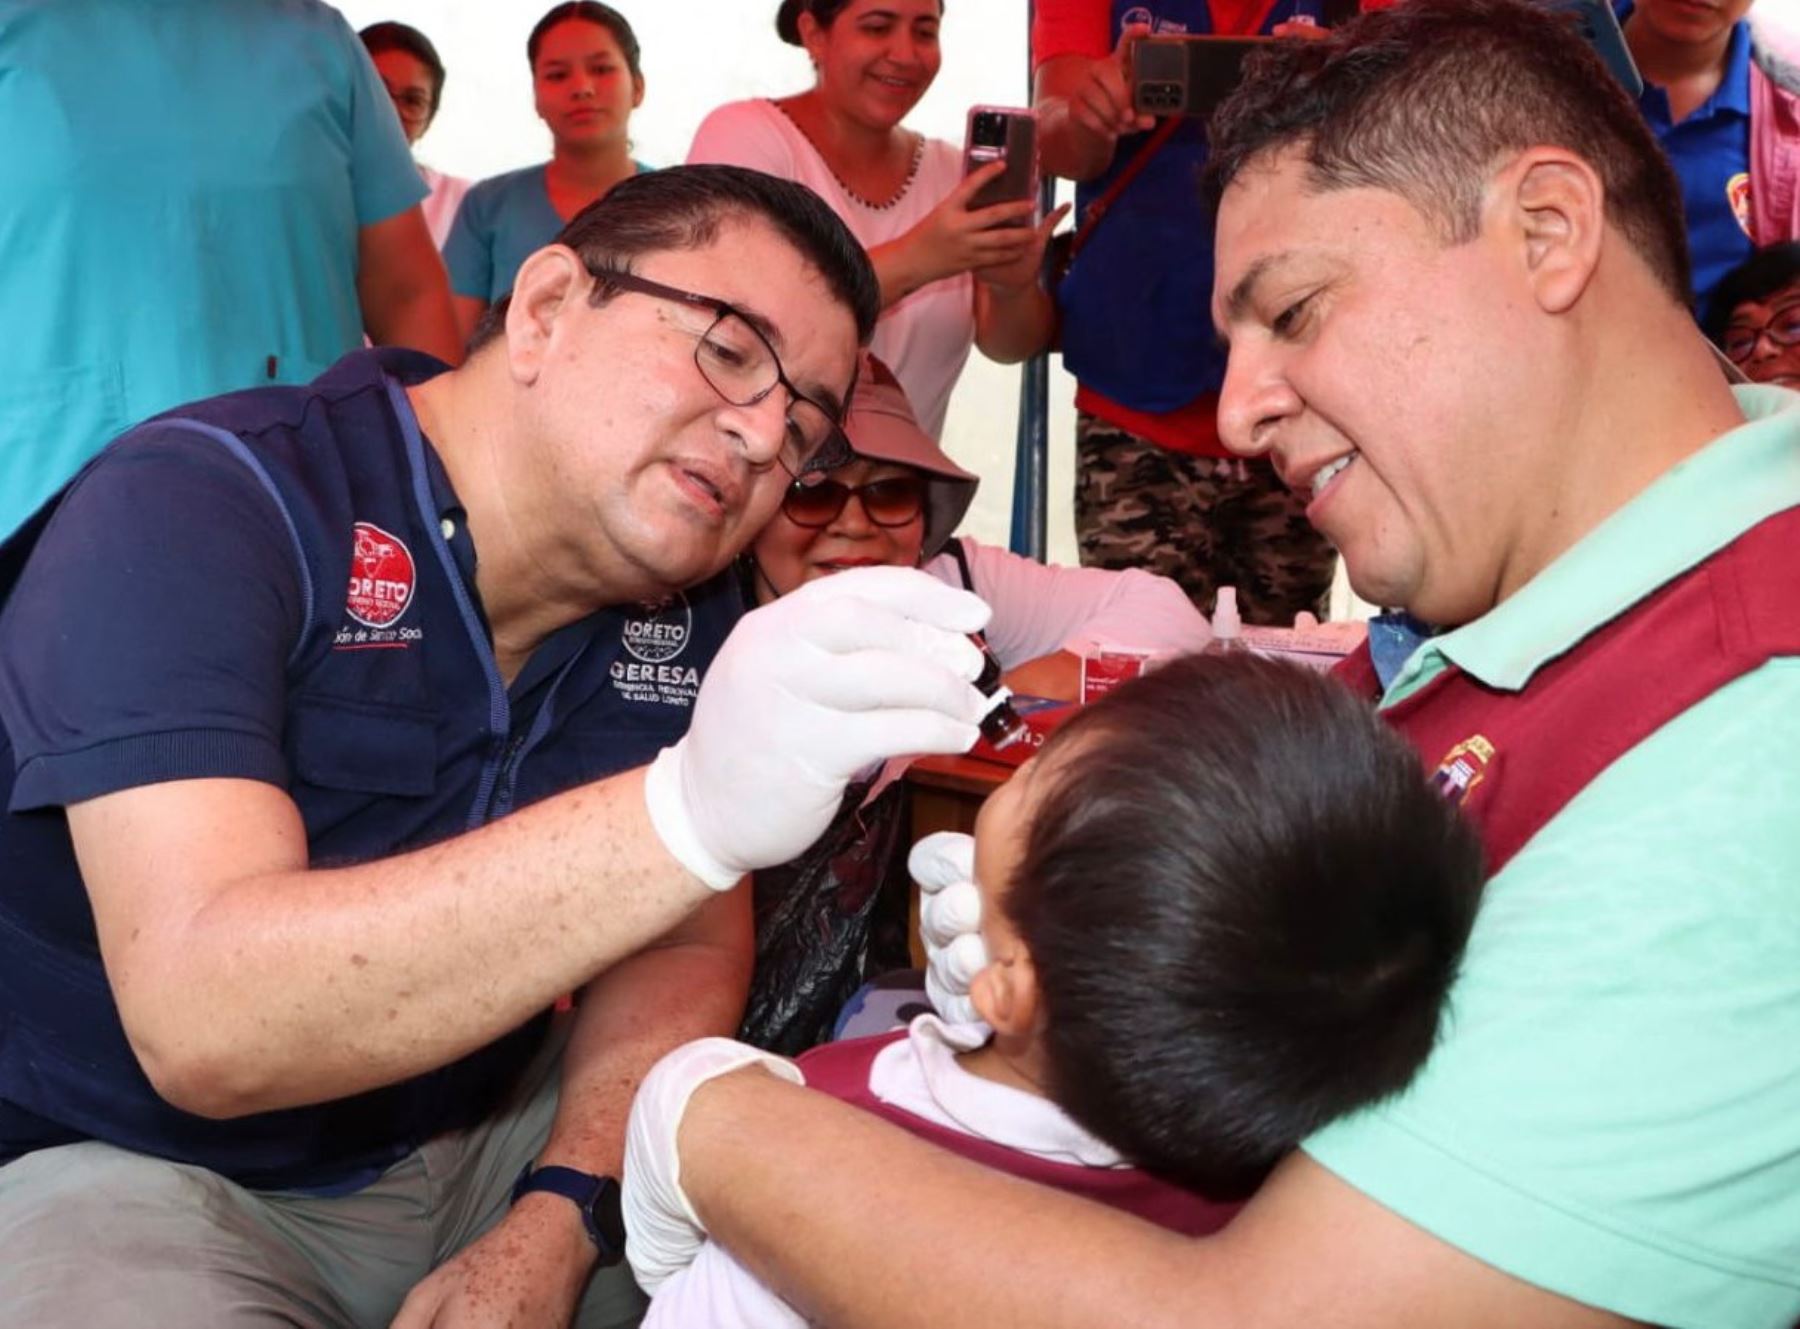 La Gerencia Regional de Salud de Loreto lanzó una campaña “Niños de Hierro” para prevenir la anemia en niños de 6 a 35 meses de edad de dicha región. ANDINA/Difusión